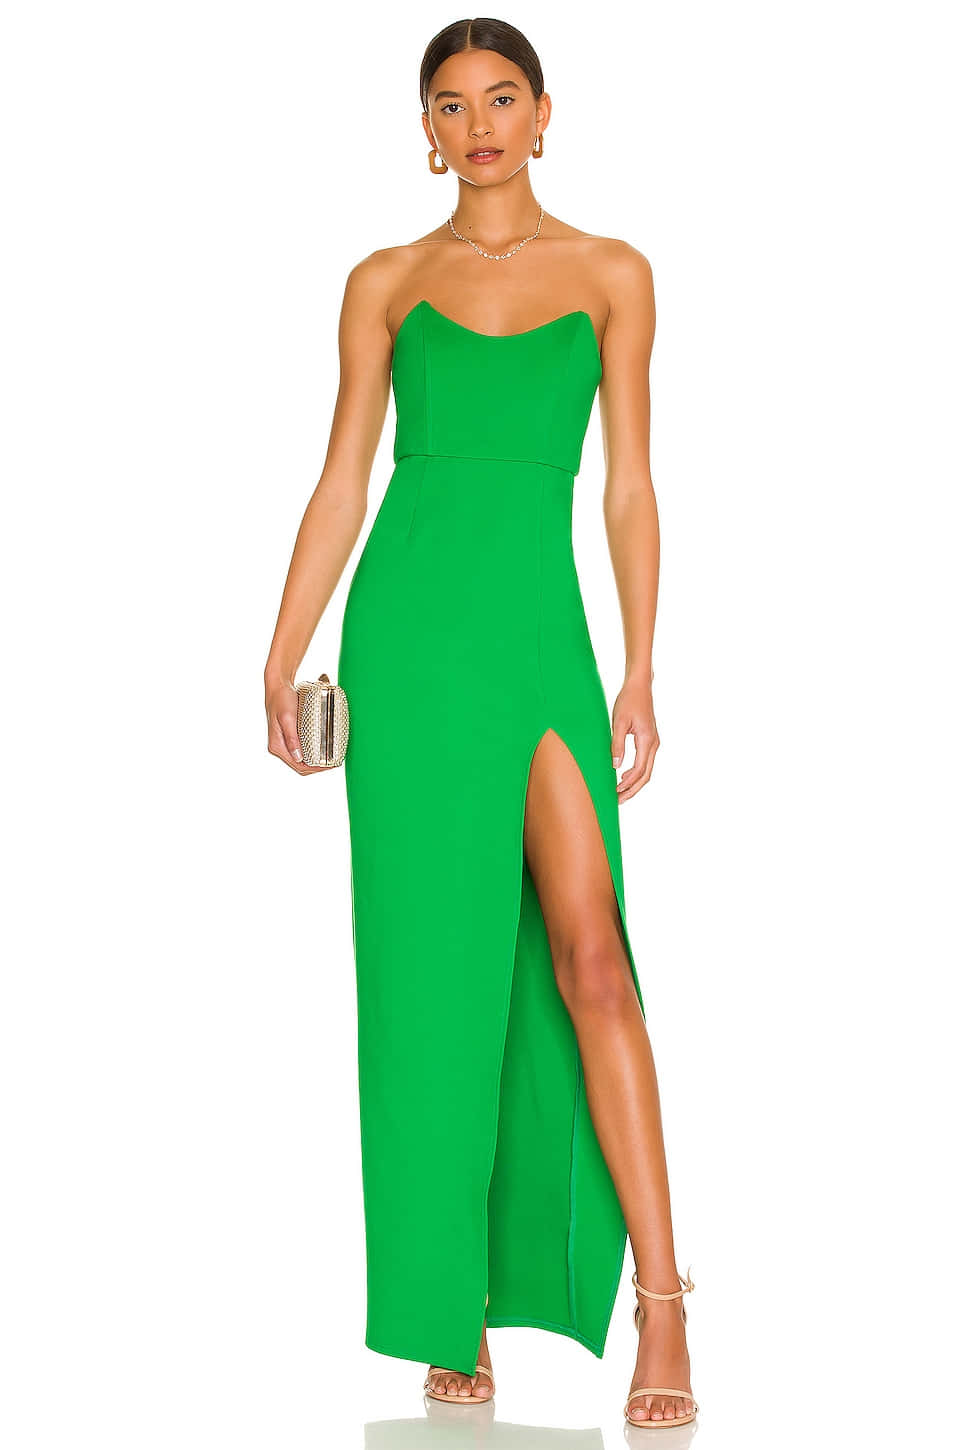 Imagende Una Mujer Con Un Vestido Verde Largo De Superdown.